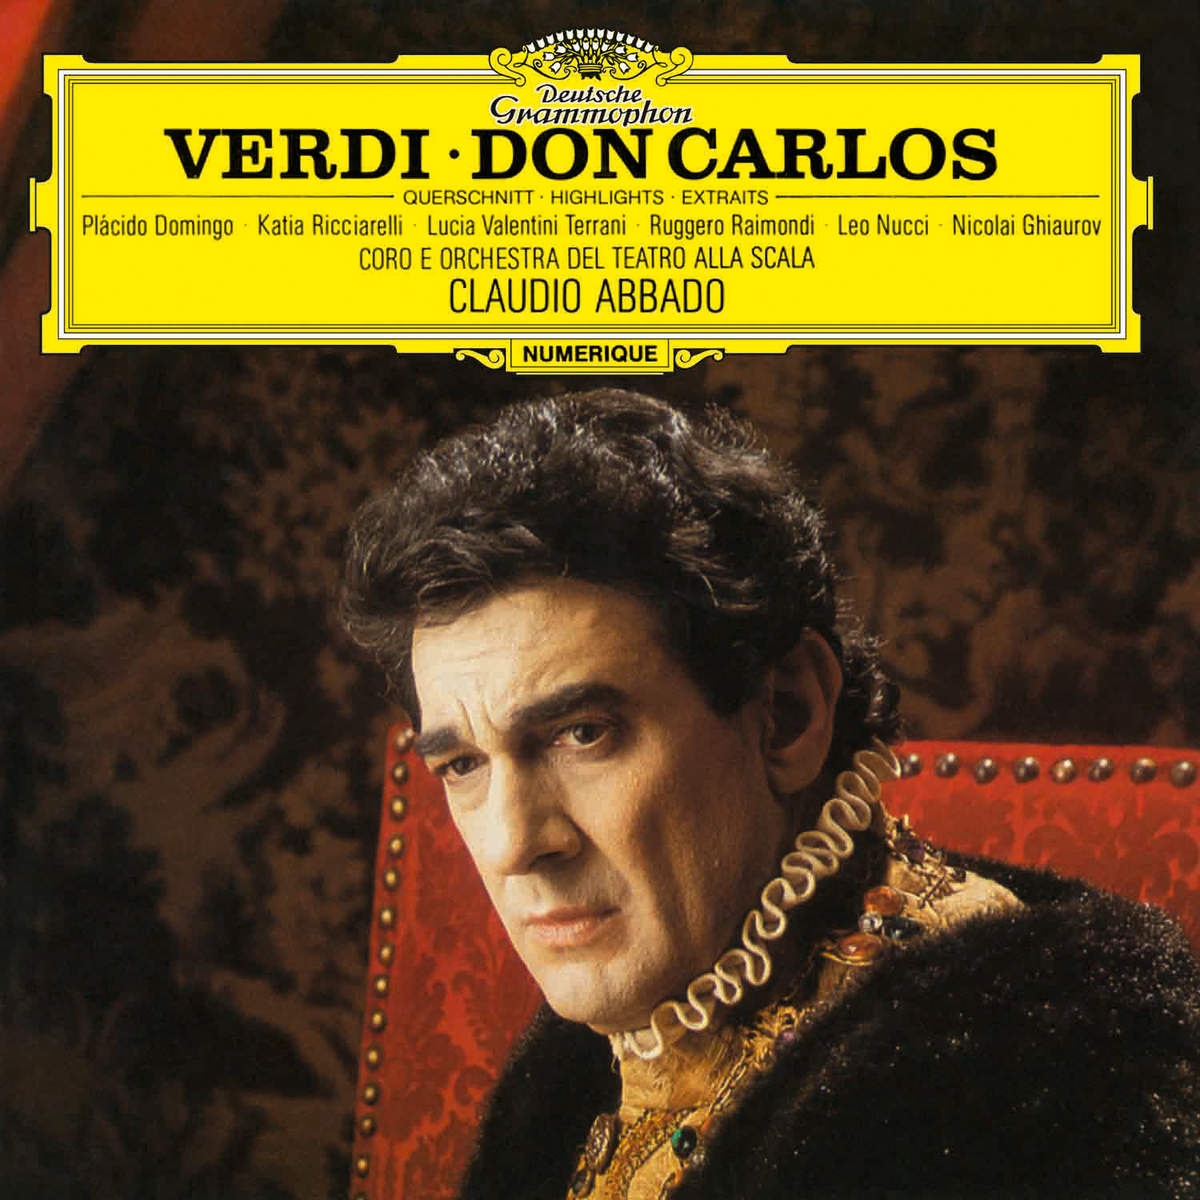 Verdi: Don Carlos  Act 3  " Ce jour heureux est plein d' alle gresse!"